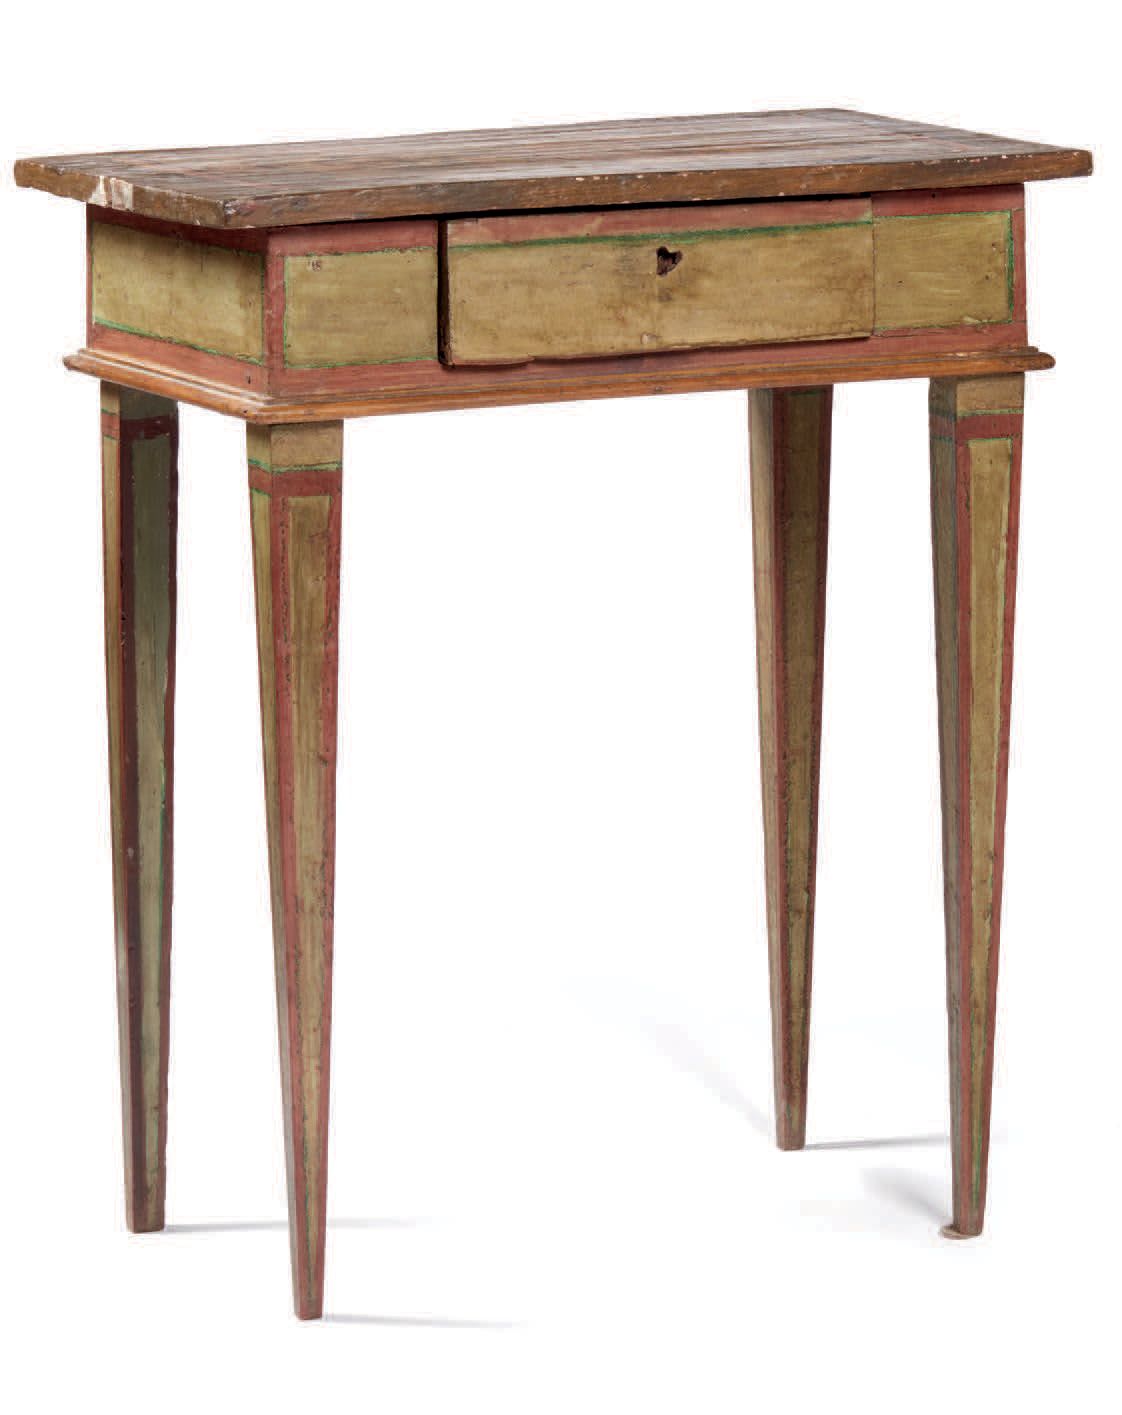 Null 浅绿色和粉红色漆木小桌，顶部装饰有仿大理石，正面有一个抽屉，截短的金字塔腿。意大利，18世纪末（后锁，有些缺漆）
Petite table en bo&hellip;